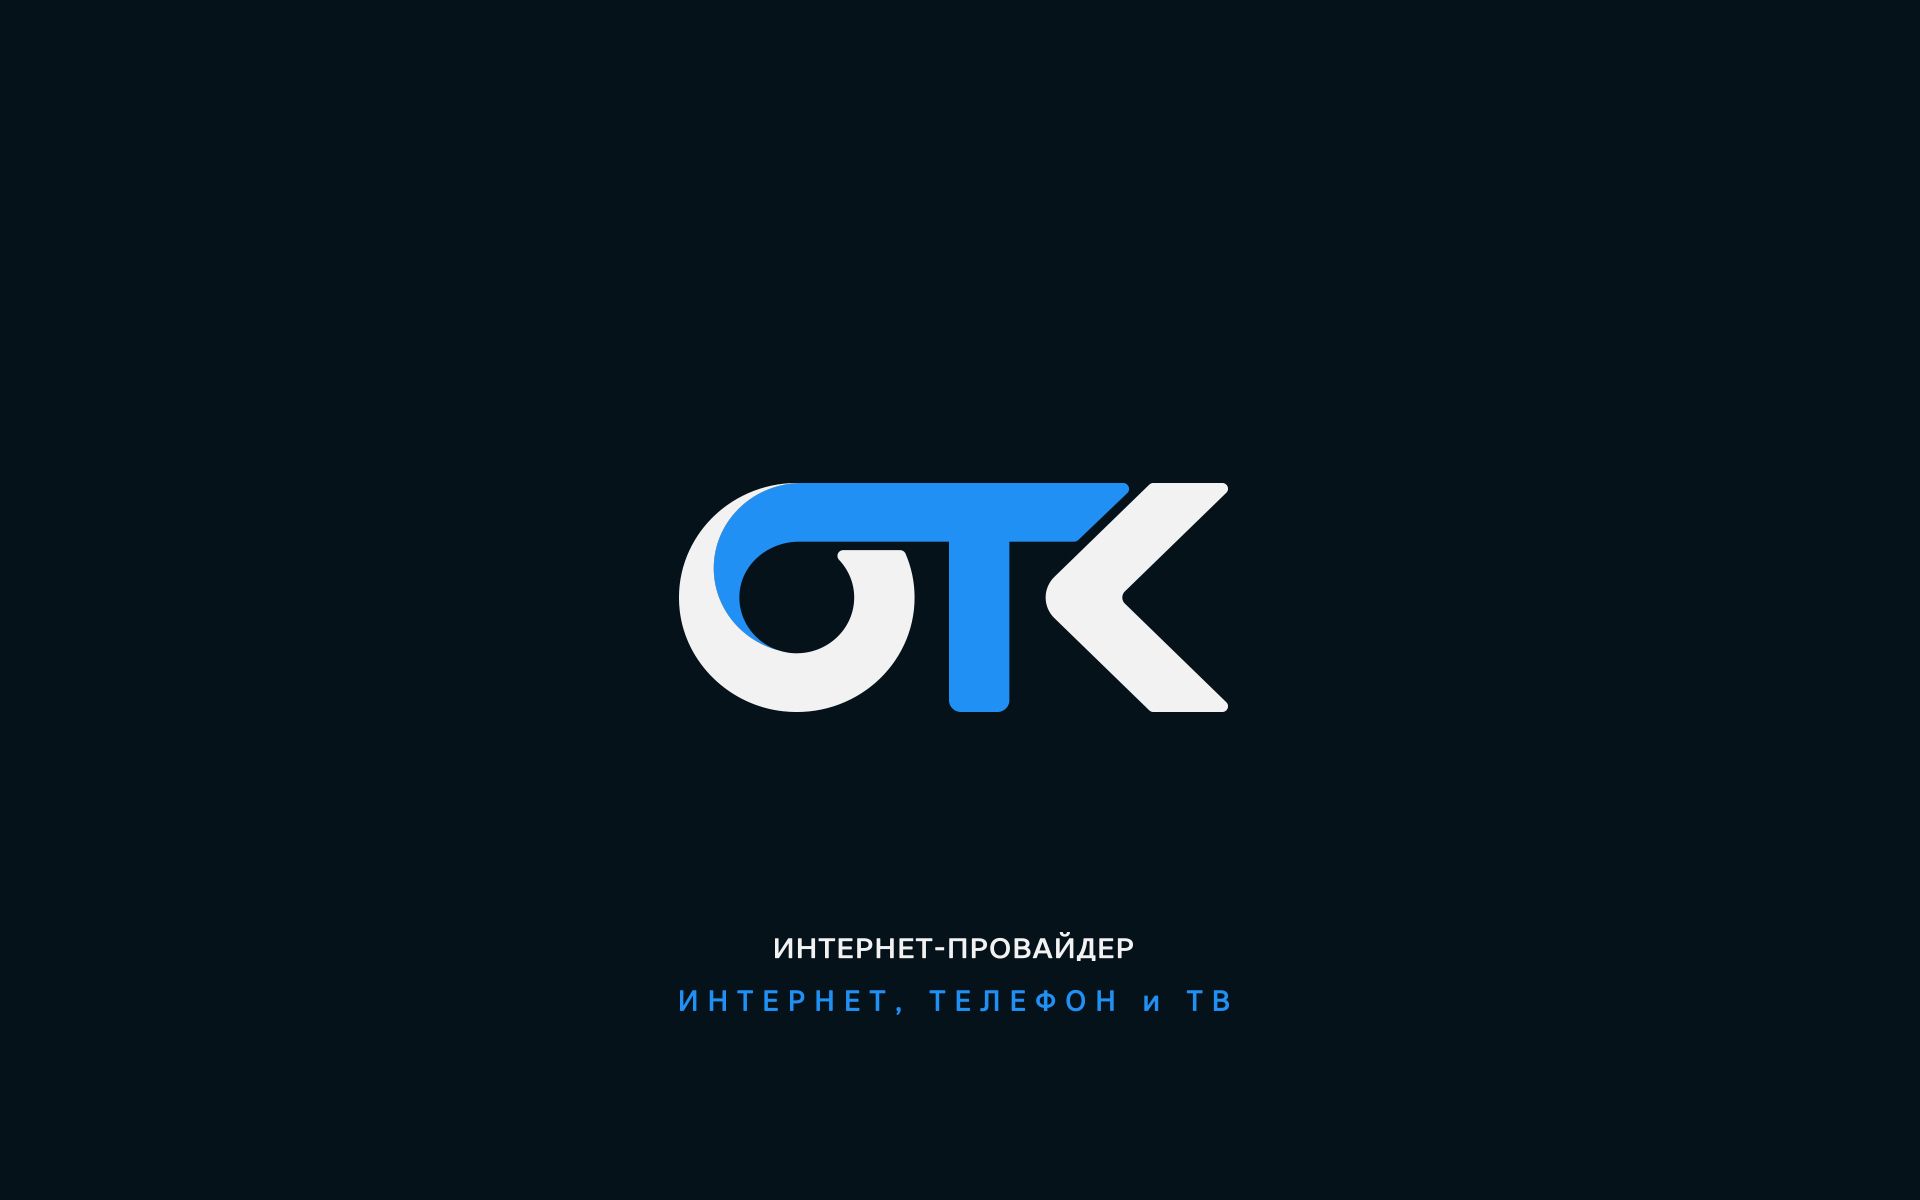 Логотип для ОТК - дизайнер U4po4mak